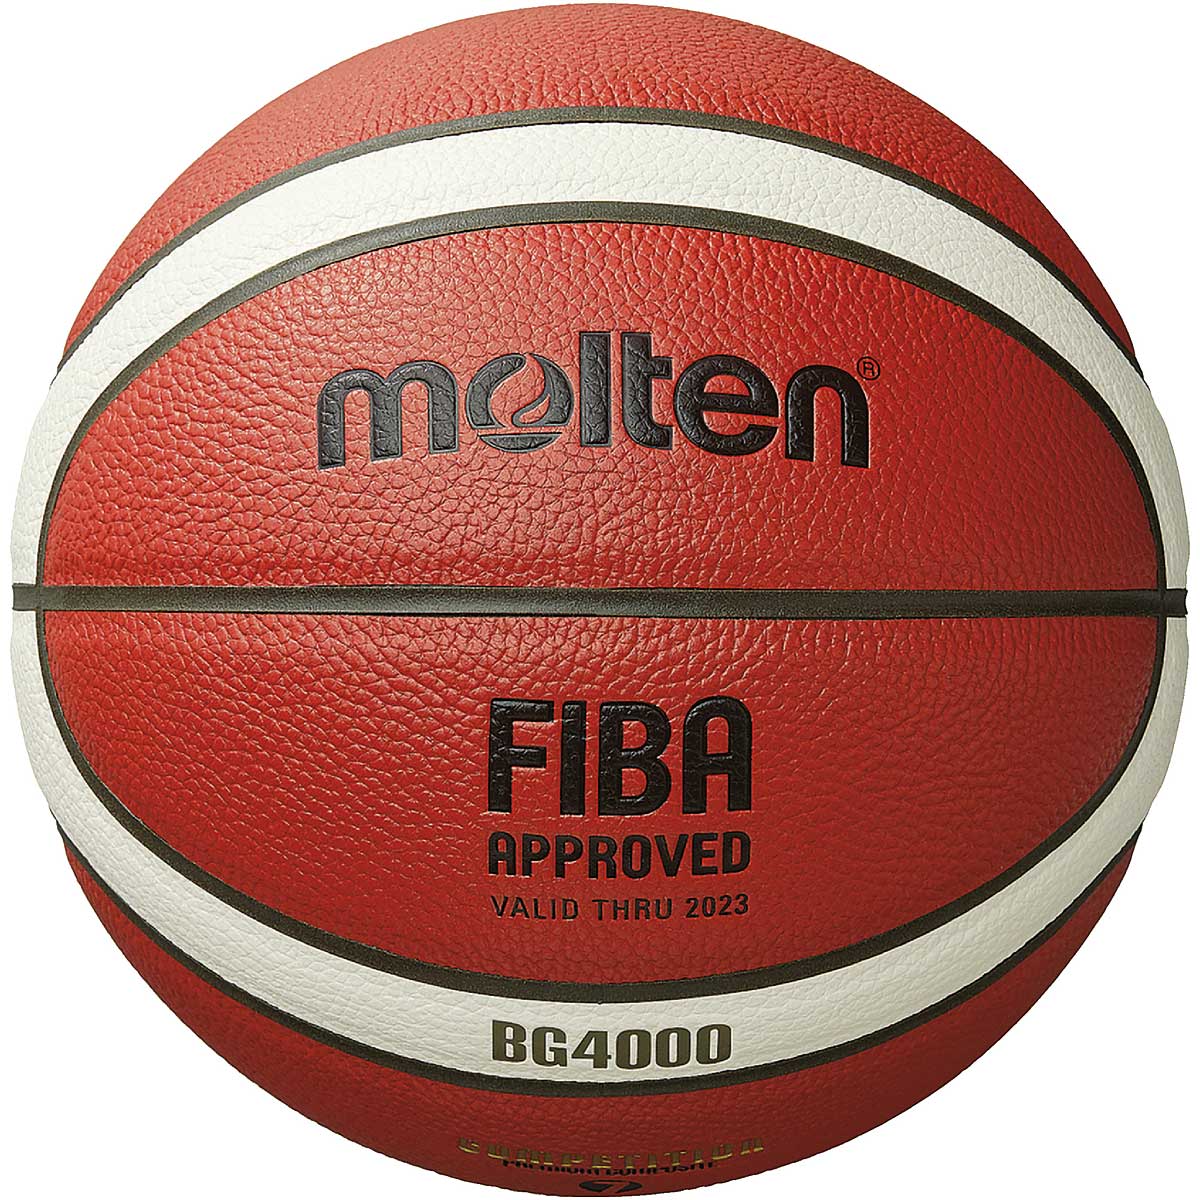 Molten B7G4000-Dbb Indoor Basketball, Orange/Ivory